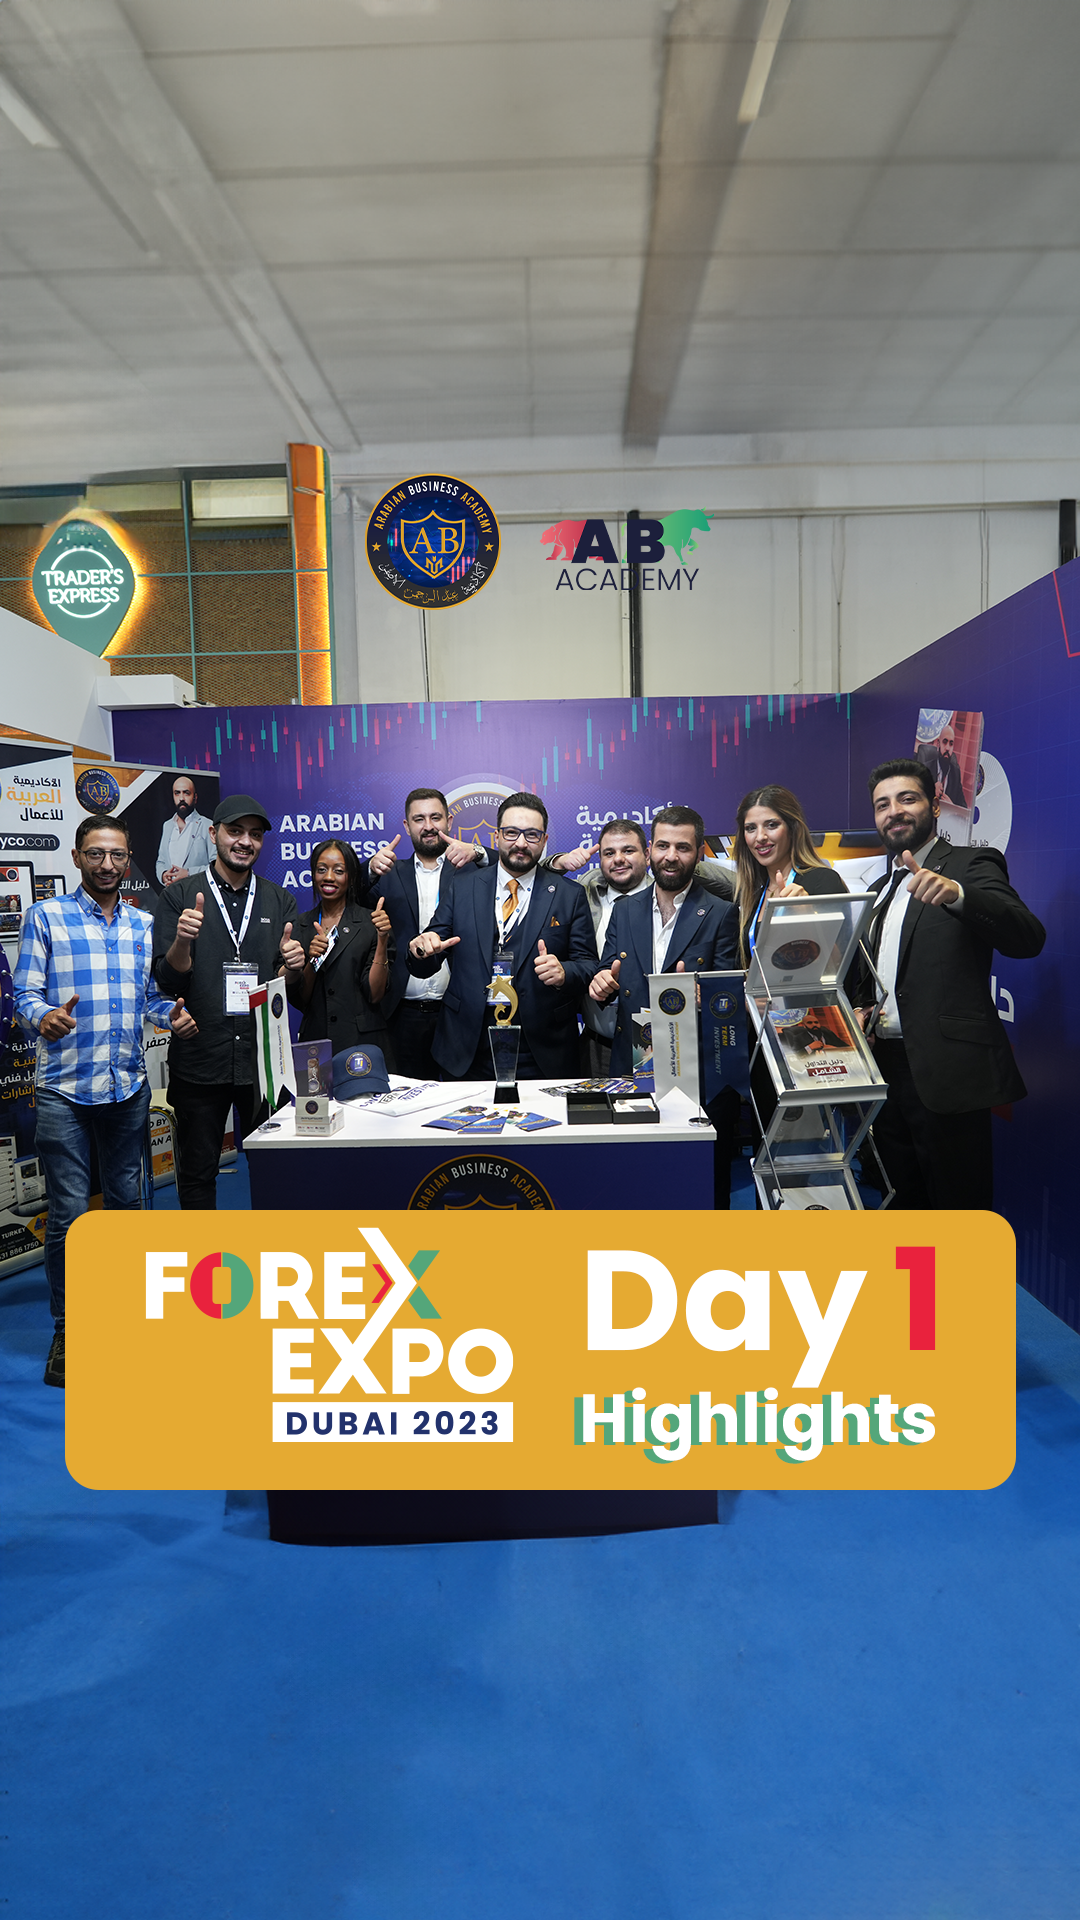 جانب من فعاليات اليوم الأول للحضور المميز للأكاديمية العربية للأعمال في فوركس اكسبو دبي 2023   ...Day 1 Highlights  Forex Expo Dubai 2023